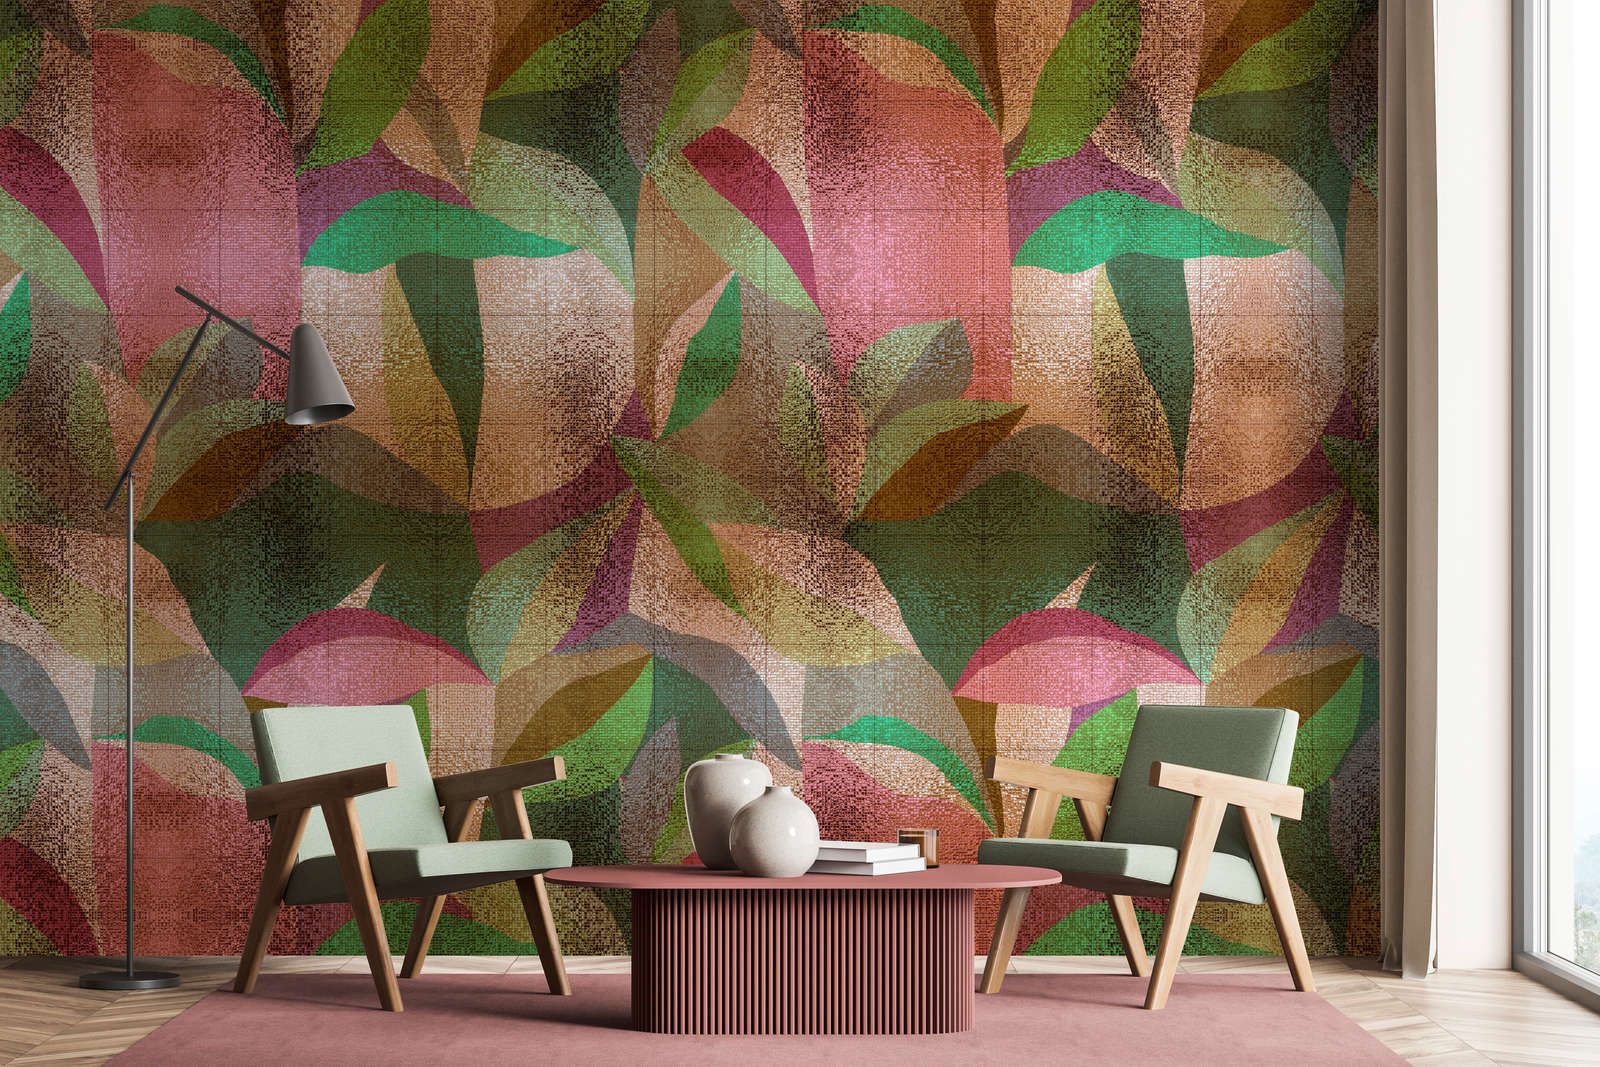             Fotomural »grandezza« - Diseño abstracto de hojas de colores con estructura de mosaico - Tela no tejida mate y lisa
        